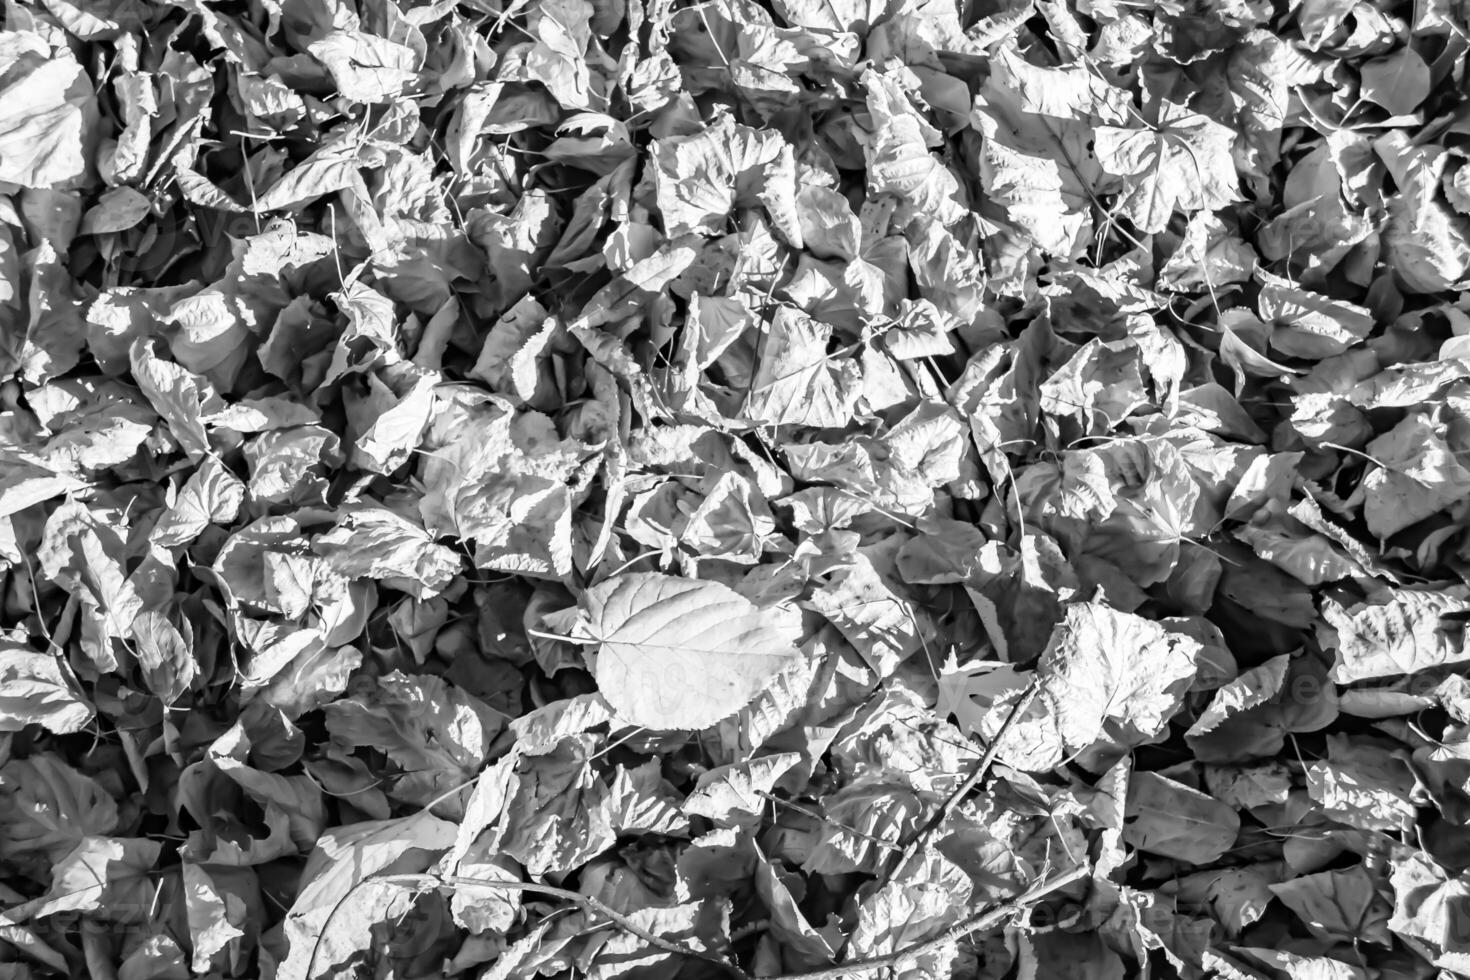 foto sul tema autunno sfondo astratto di foglie d'acero che cadono sulla superficie